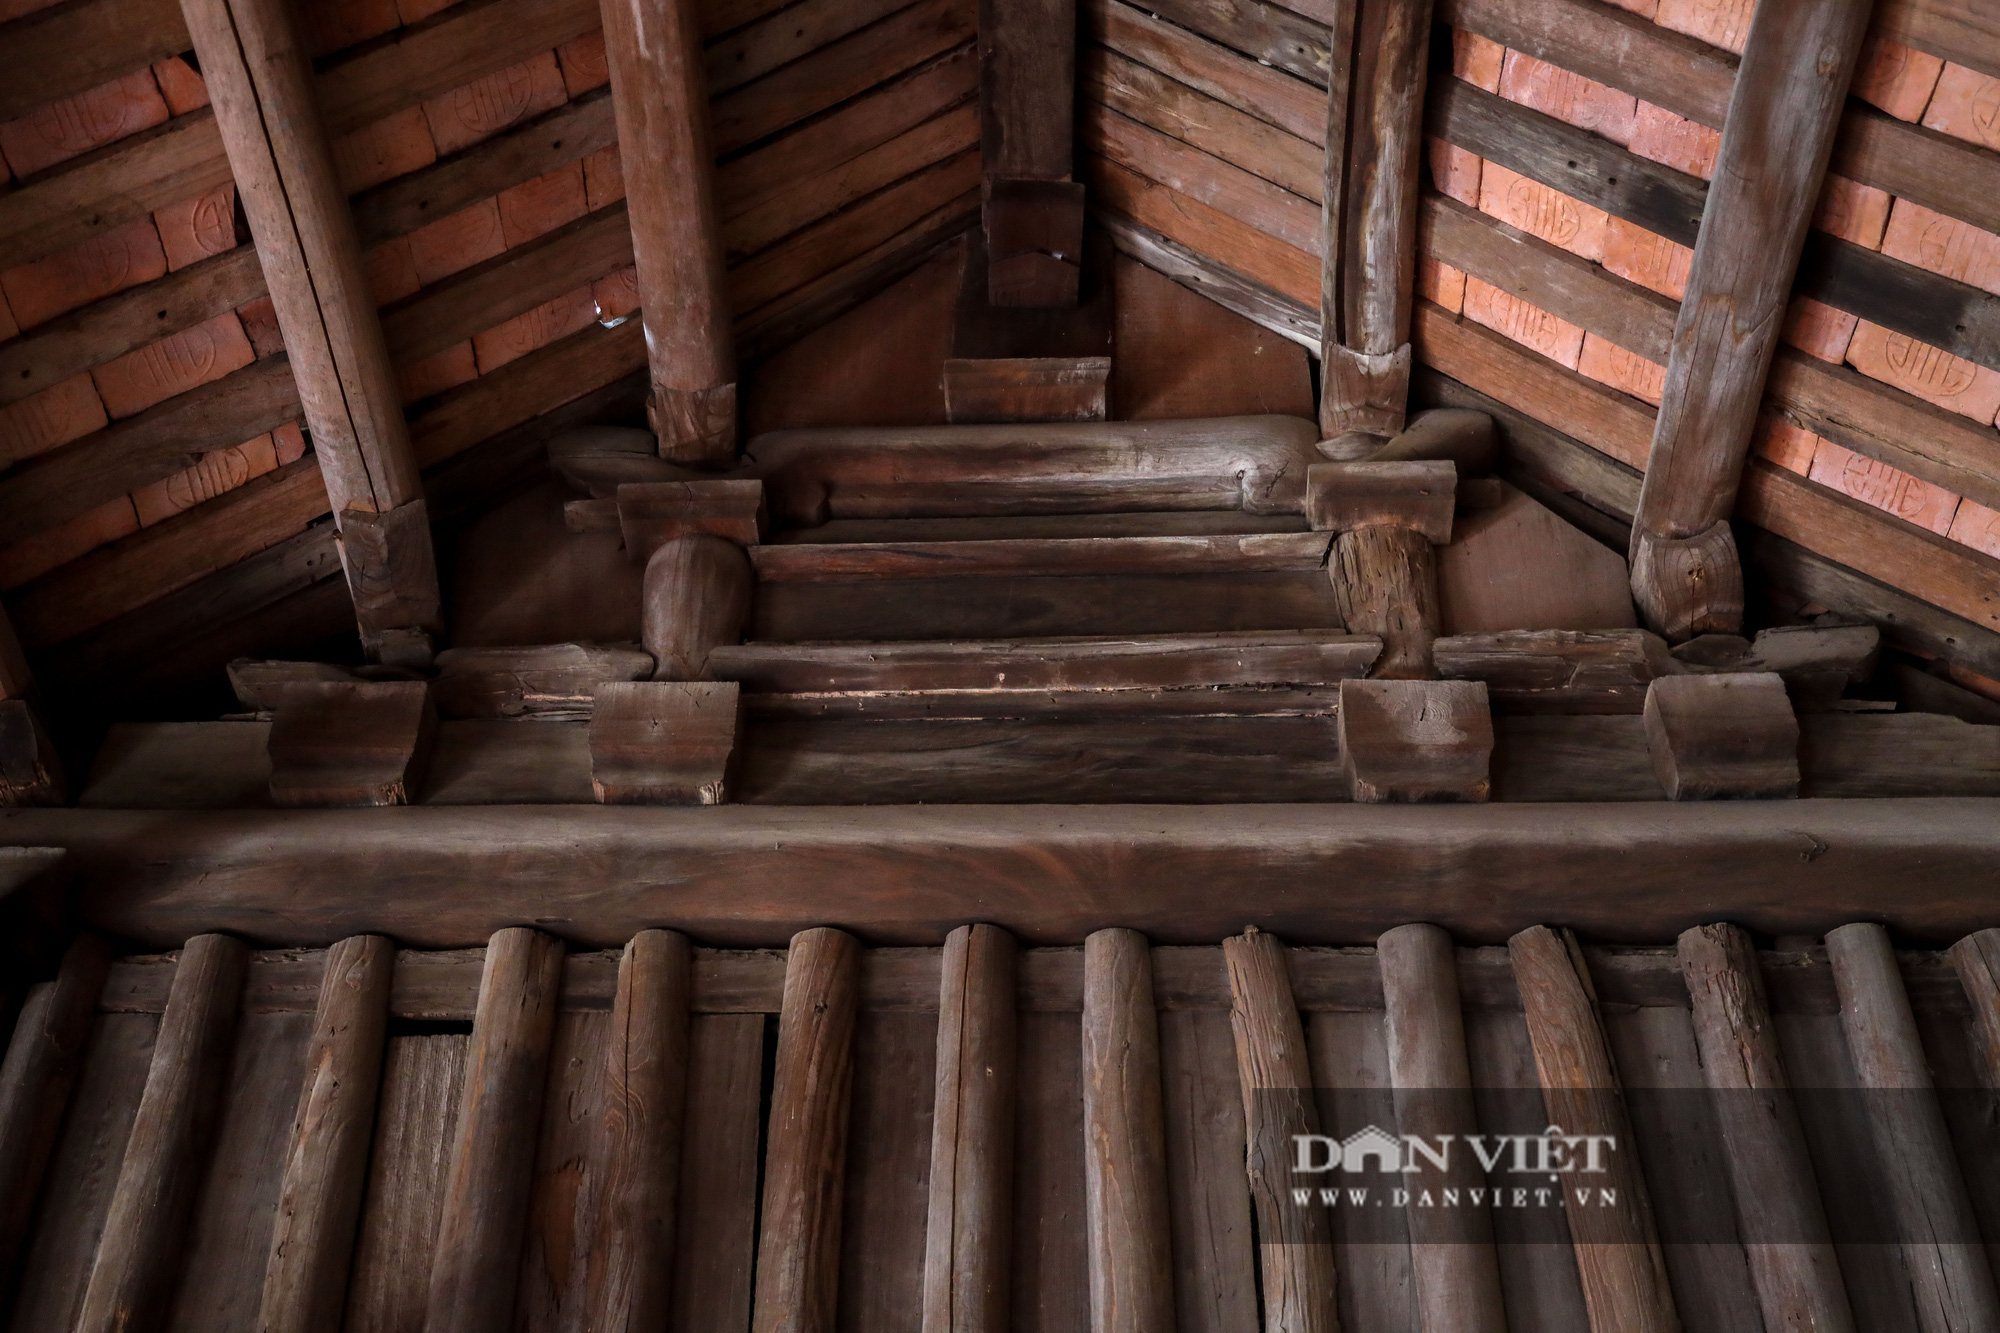 Kỳ lạ ngôi nhà xây mất 1 đêm, hơn 300 năm vẫn vững chãi ở Hà Nội - Ảnh 8.